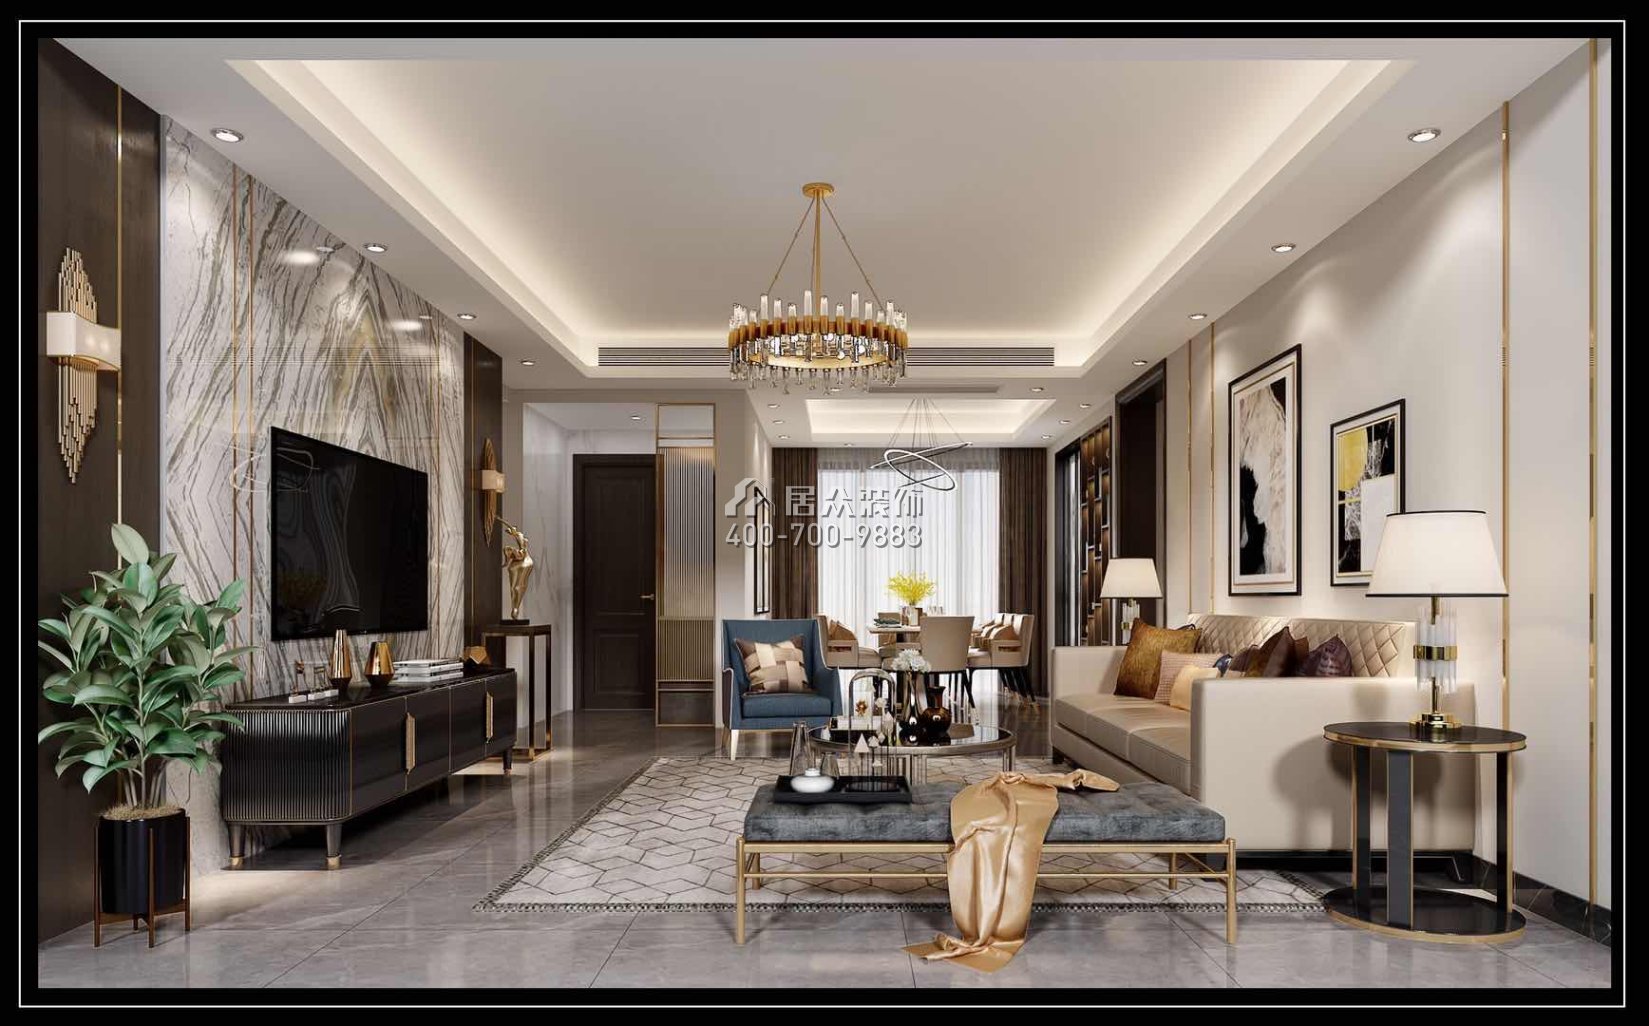 星城翠珑湾150平方米现代简约风格平层户型客厅装修效果图